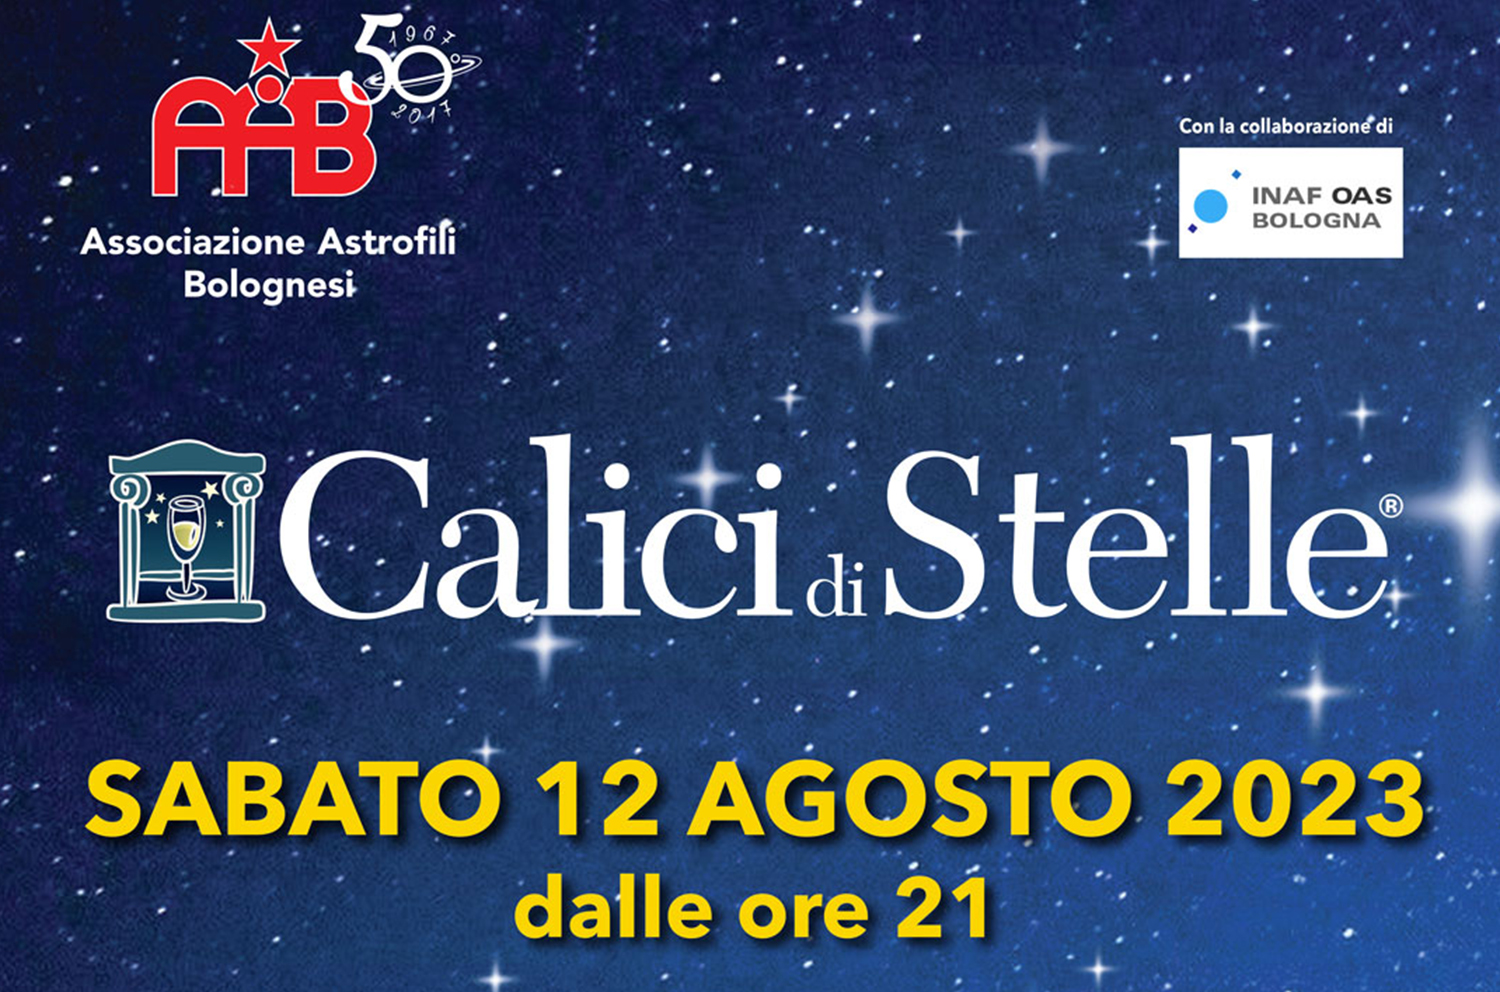 ProLoco Monte San Pietro, AAB - Associazione Astrofili Bolognesi